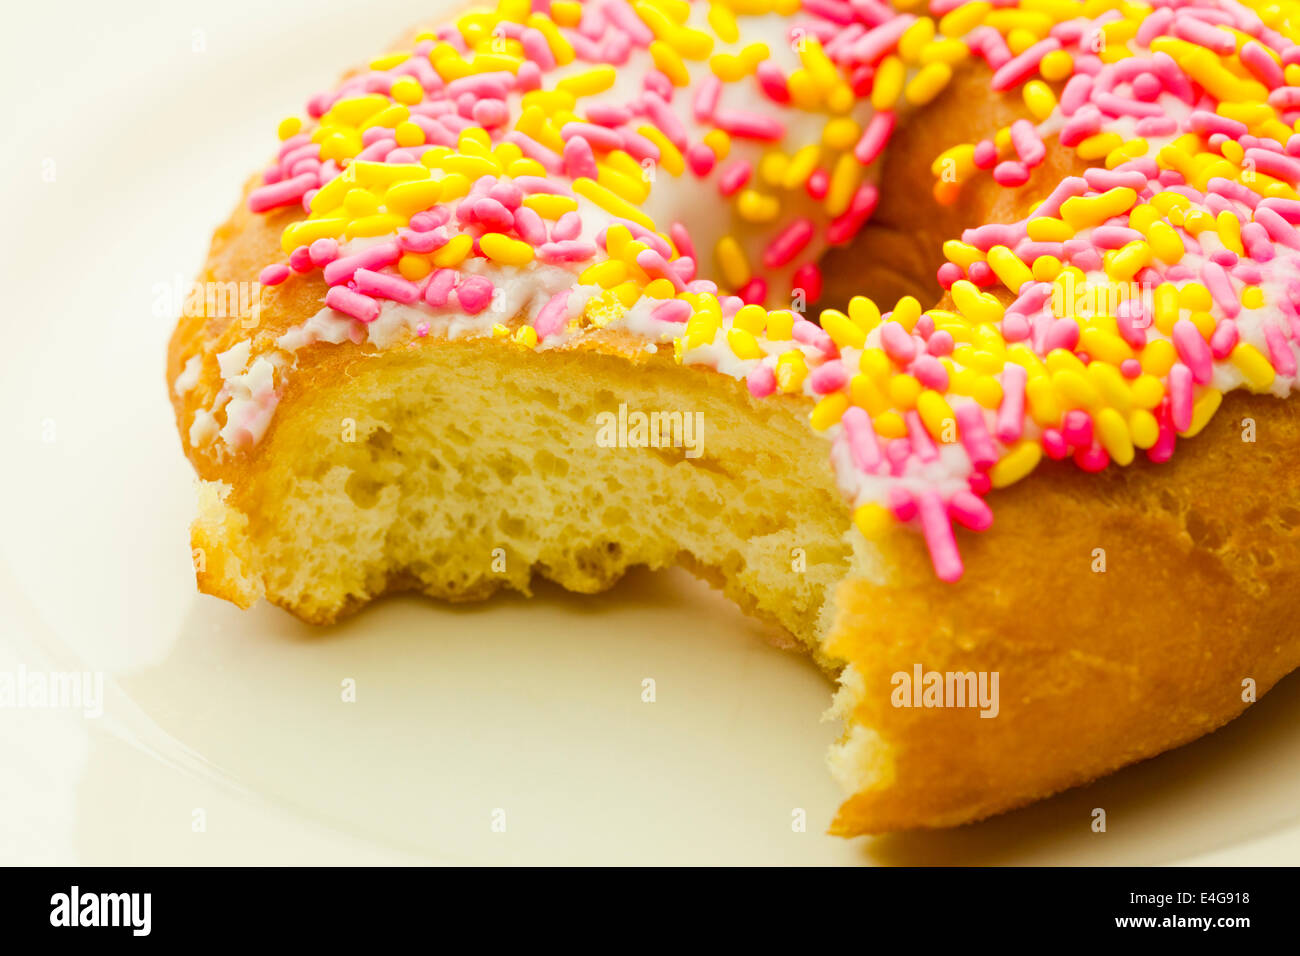 En-cas pris hors saupoudré donut Banque D'Images